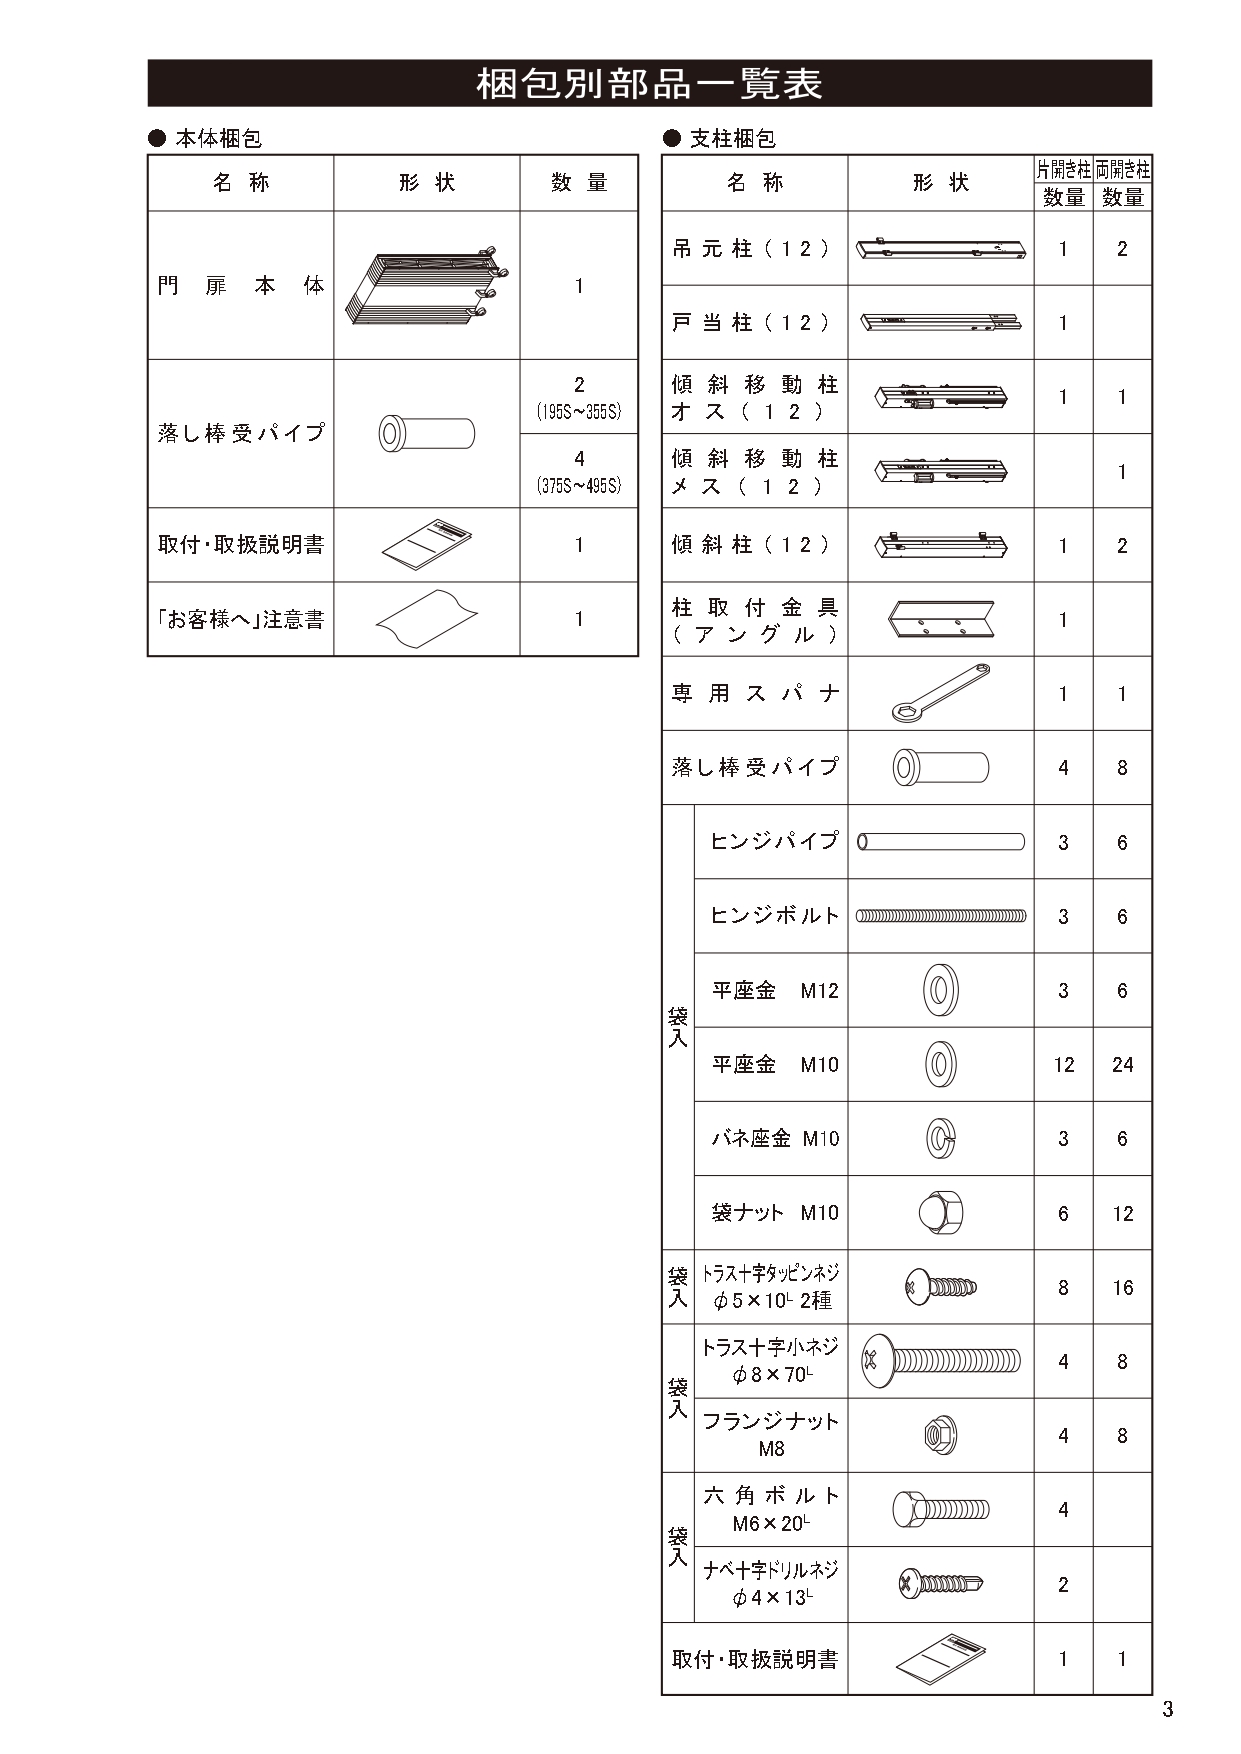 ニューハピネスHG 傾斜・ペットガードタイプ 施工説明書_page-0003